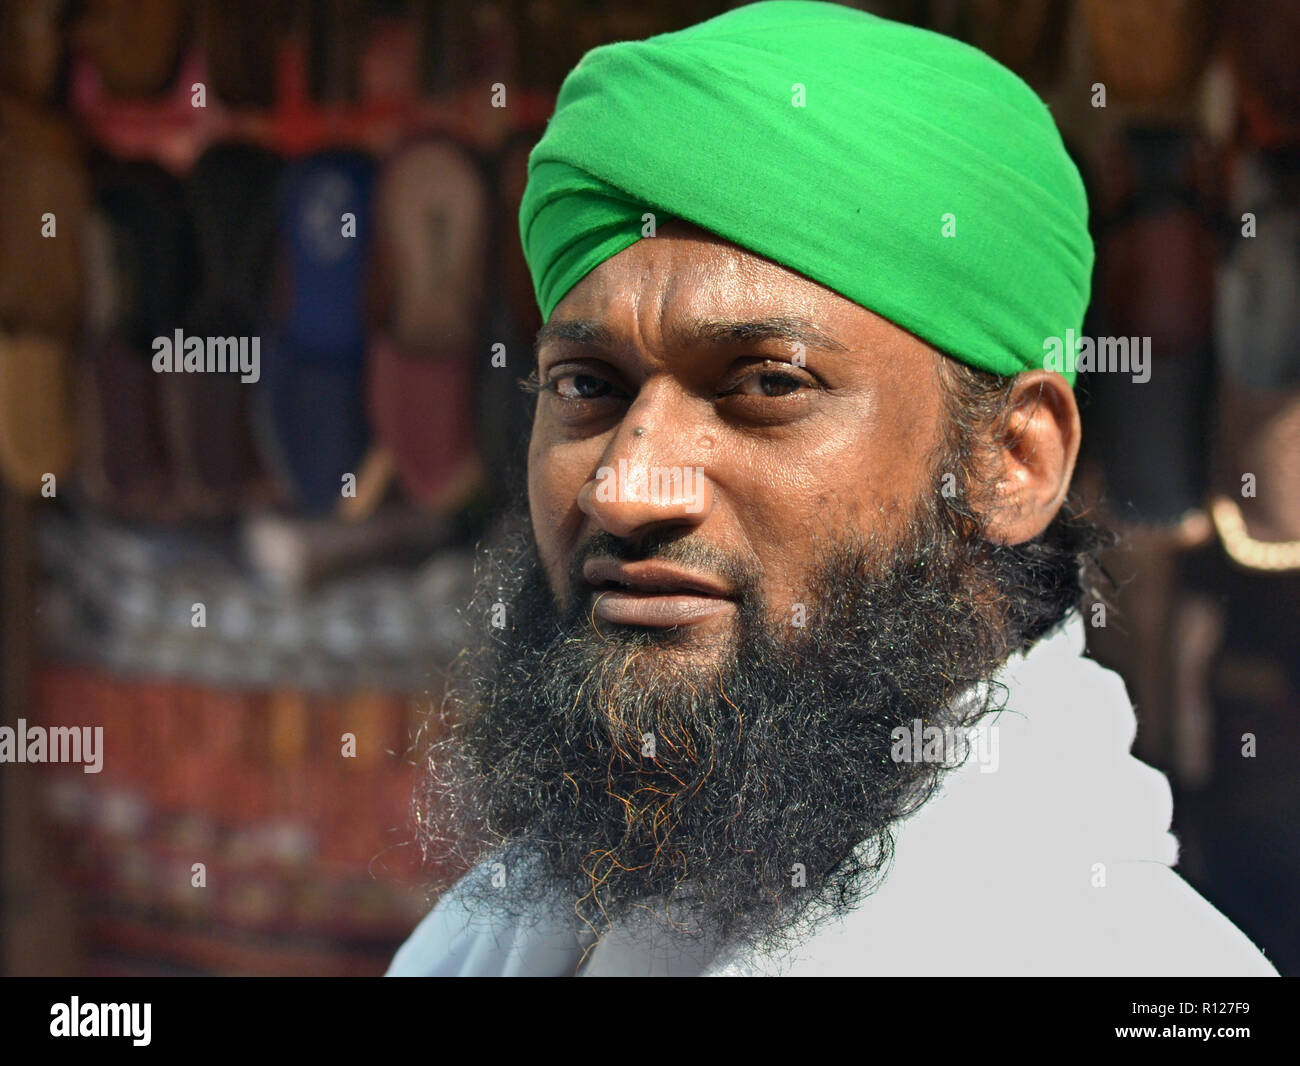 Les marchands de chaussures noires avec barbe islamique porte un turban-style coiffure en vert et pose pour la caméra. Banque D'Images